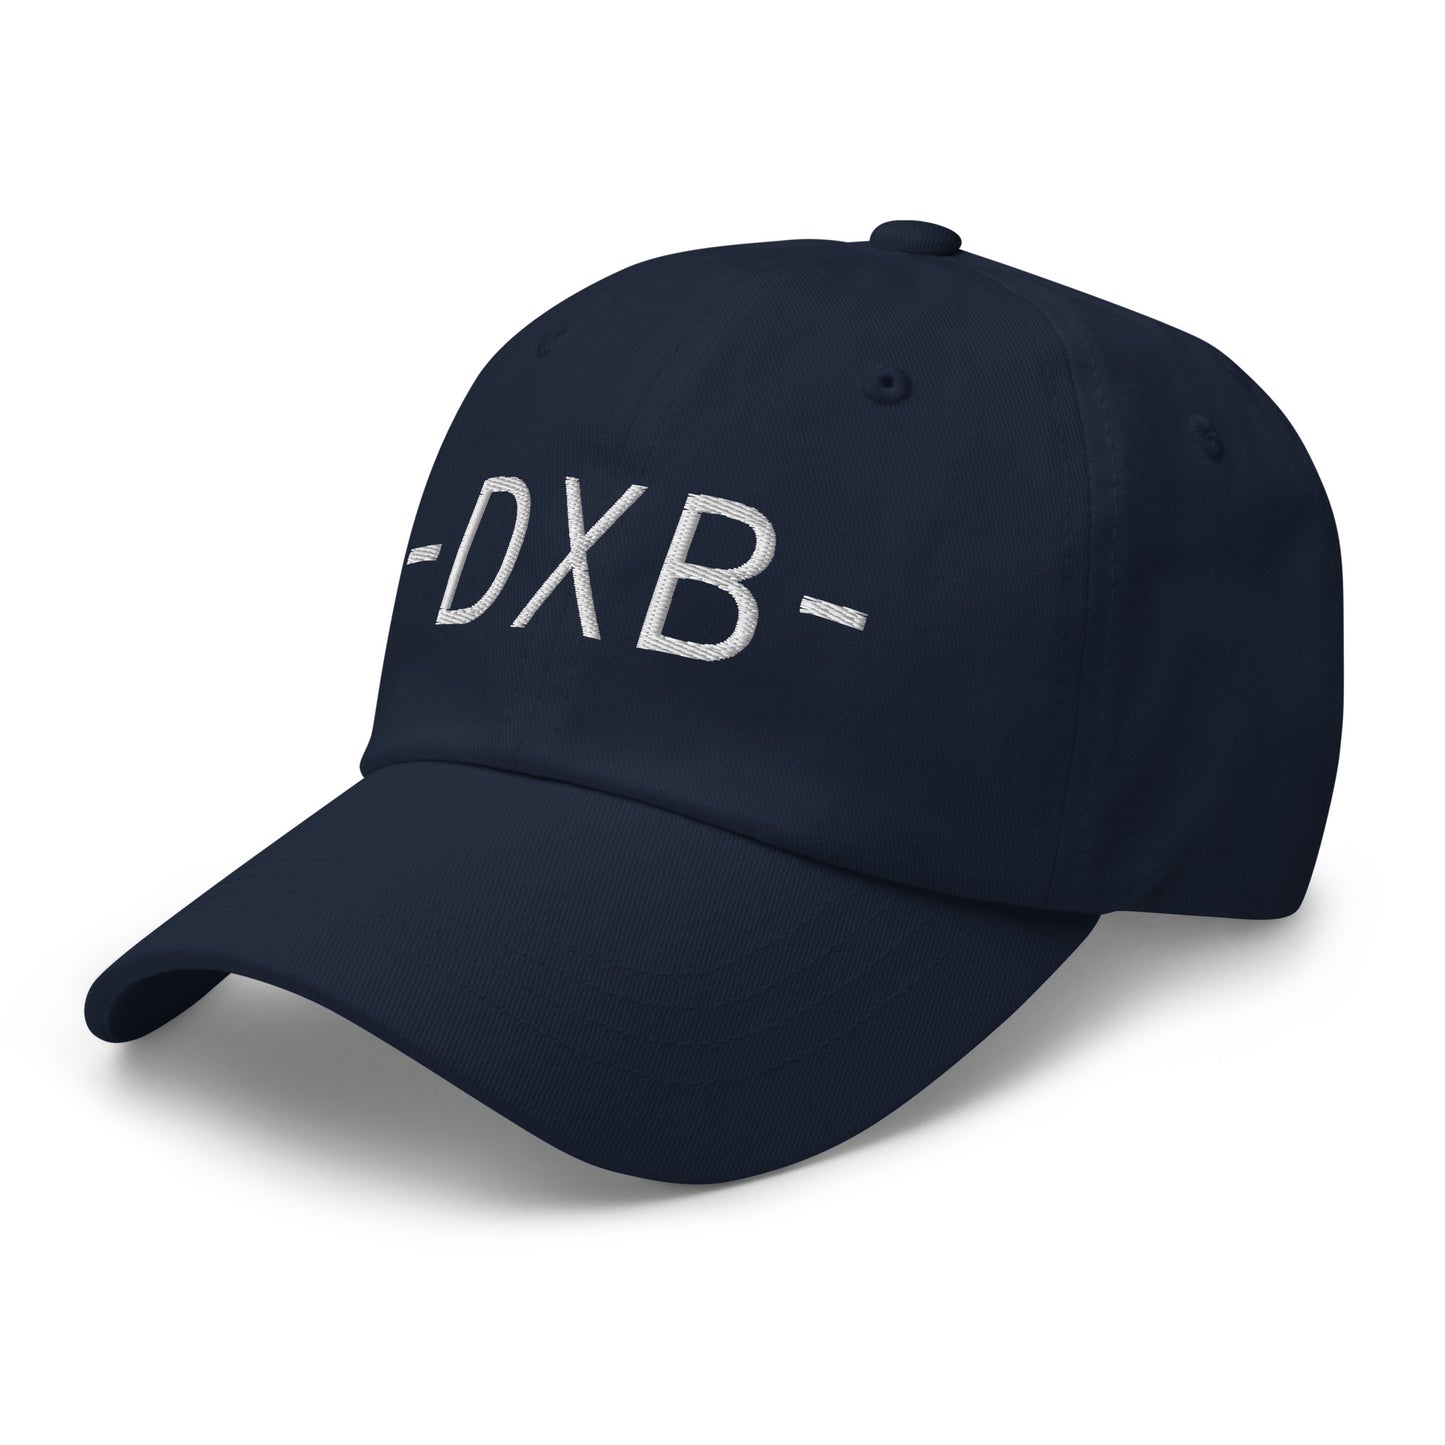 Souvenir Baseball Cap - White • DXB Dubai • YHM Designs - Image 15